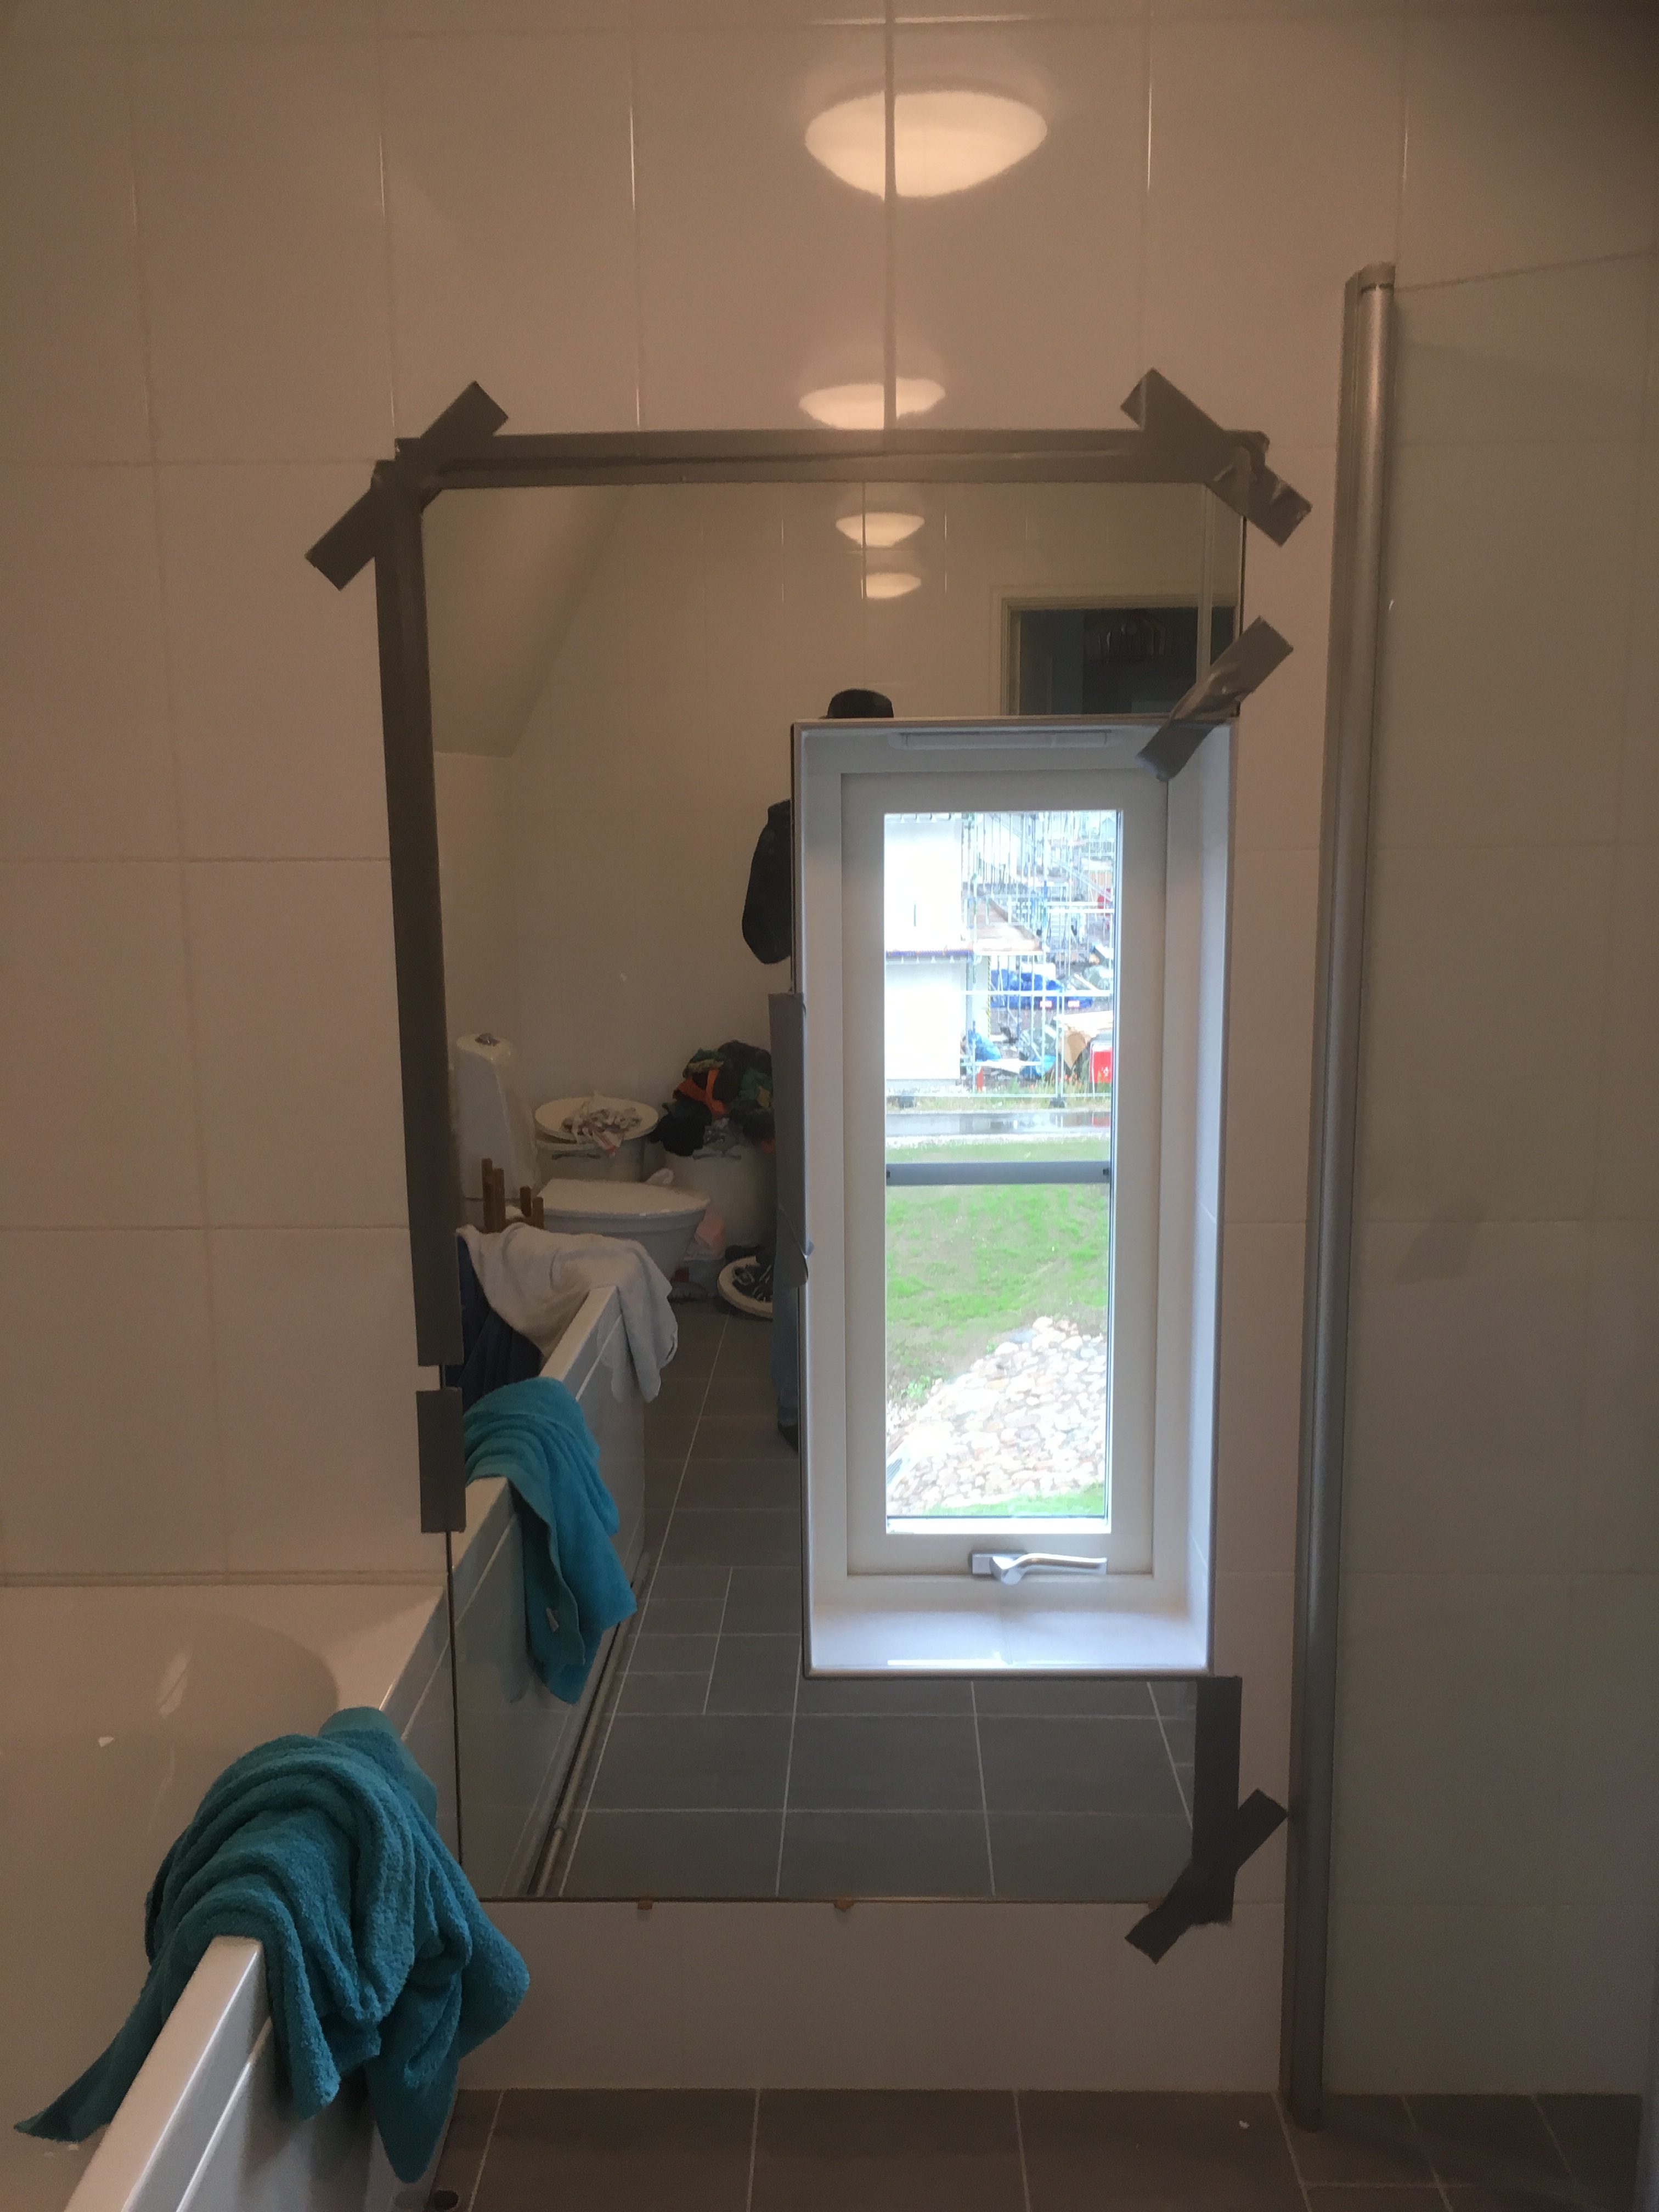 En måttanpassad spegel till ett badrum